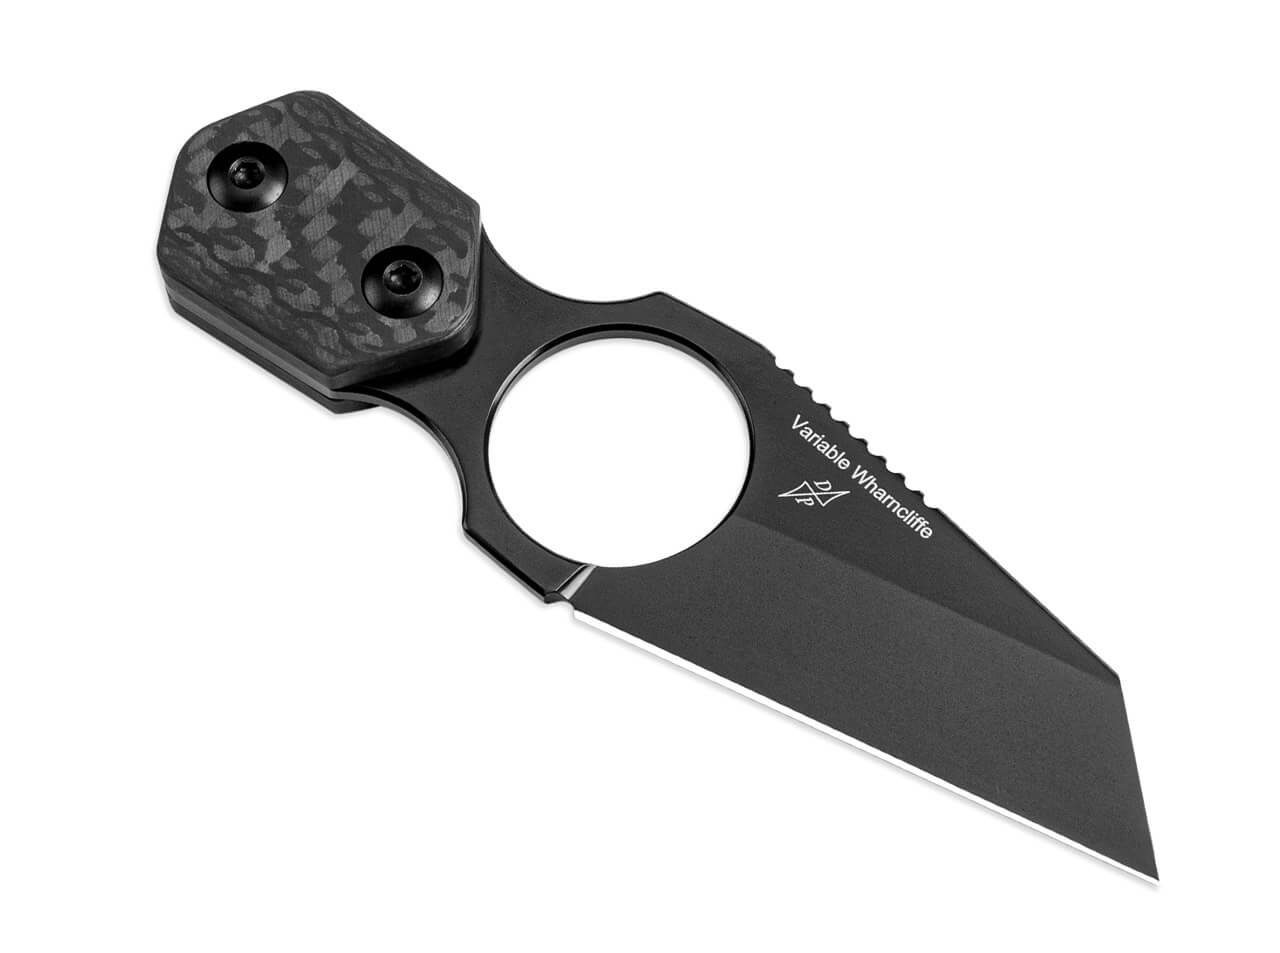 Kizer Universalmesser Kizer Variable Wharncliffe CF mit Scheide Neckknife